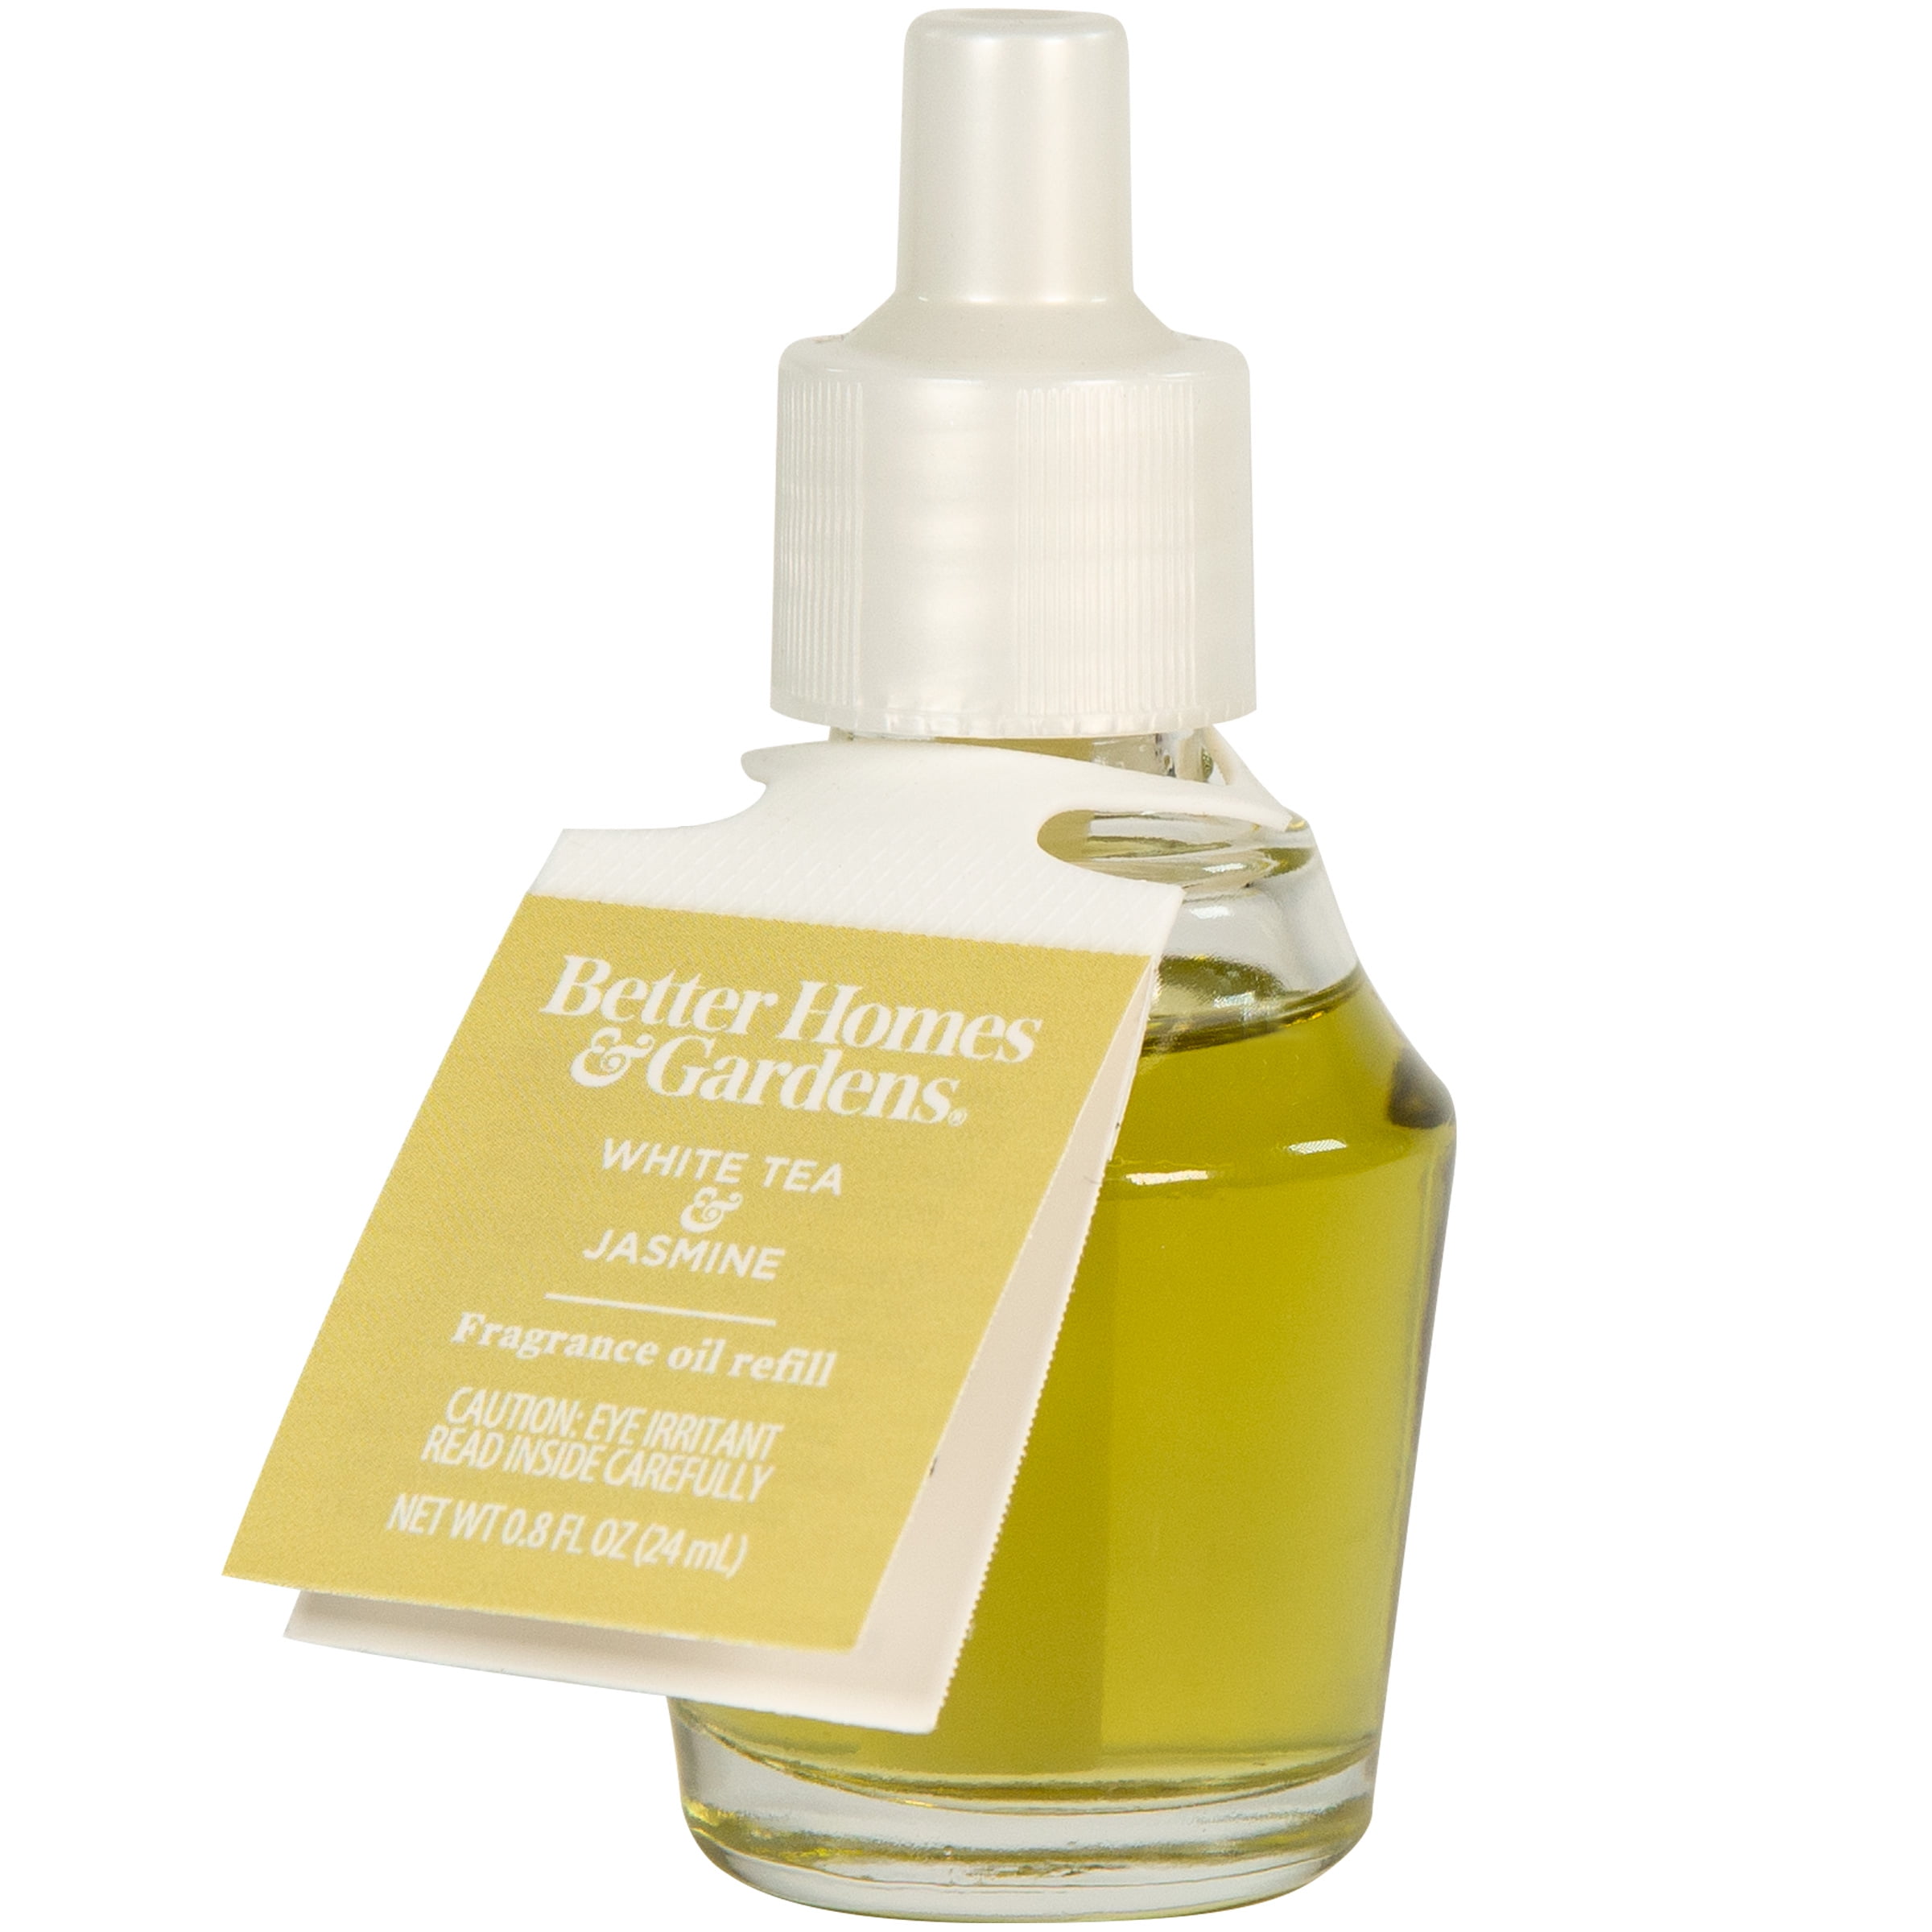 White Tea & Jasmine Fragrance Oil Refill, Better Homes & Gardens, 24 ml